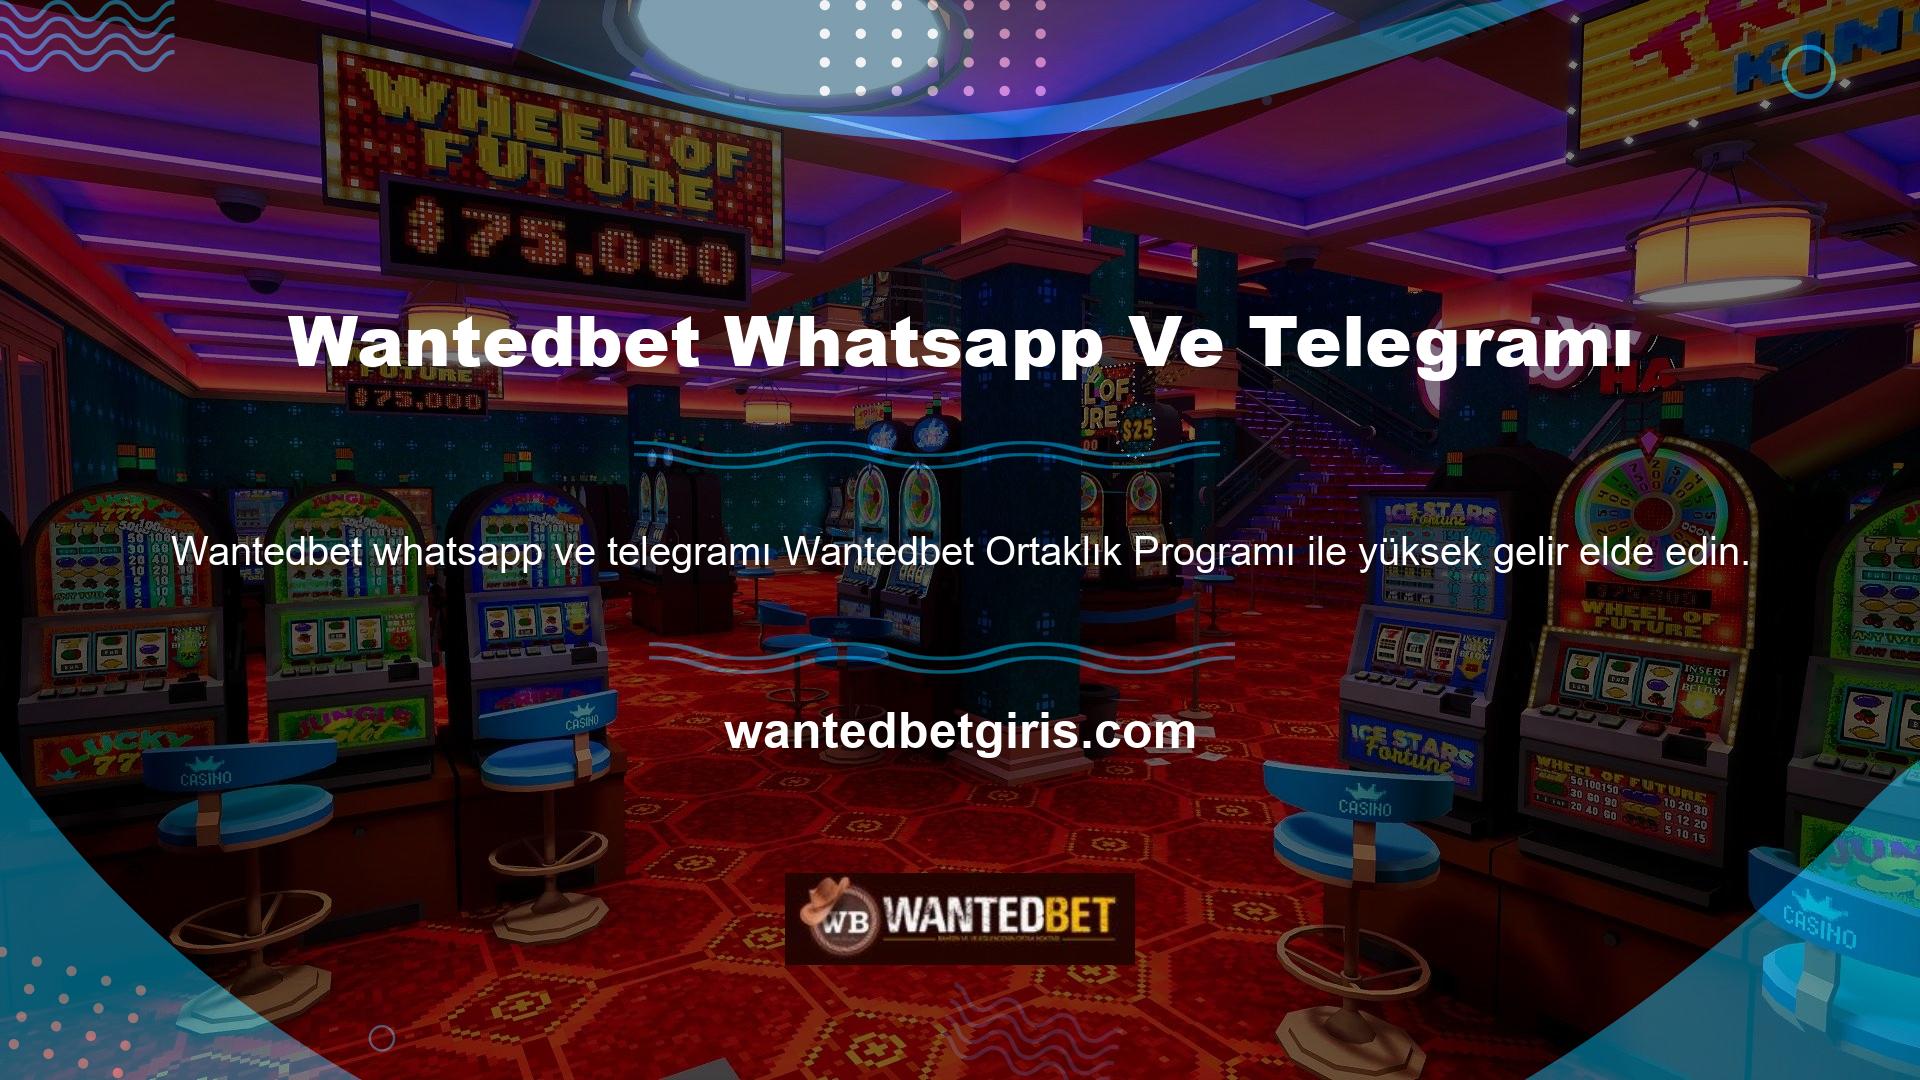 Wantedbet, özellikle diğer bahis siteleriyle karşılaştırıldığında popüler programlardan biridir